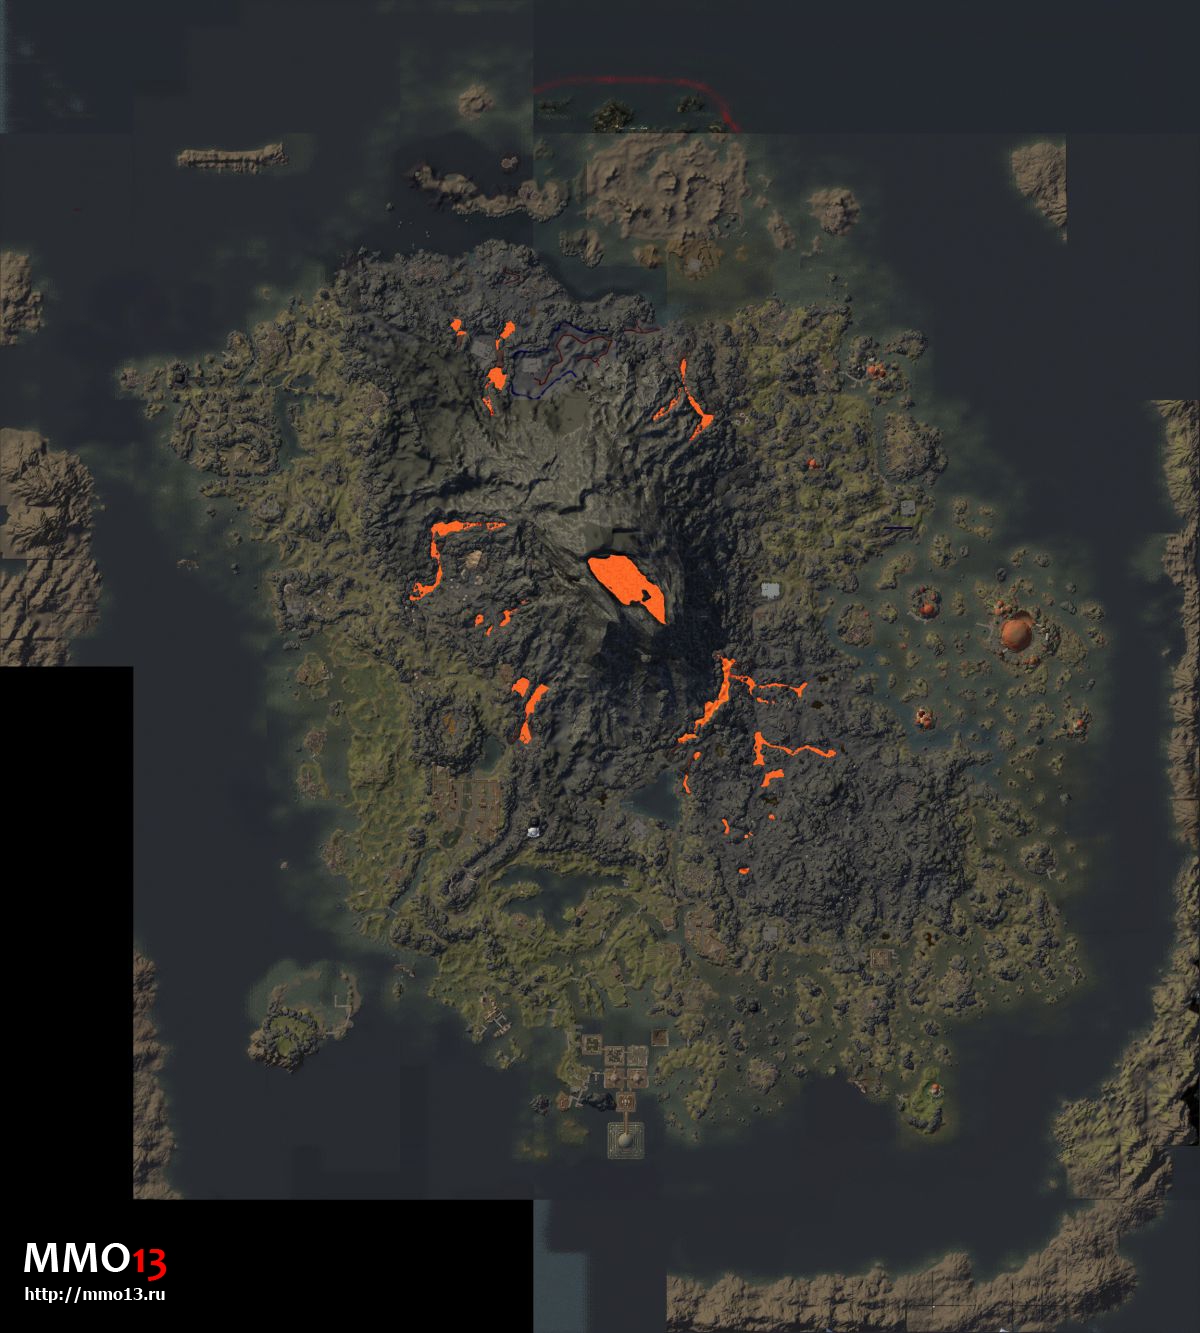 В The Elder Scrolls Online может появиться остров TES III: Morrowind